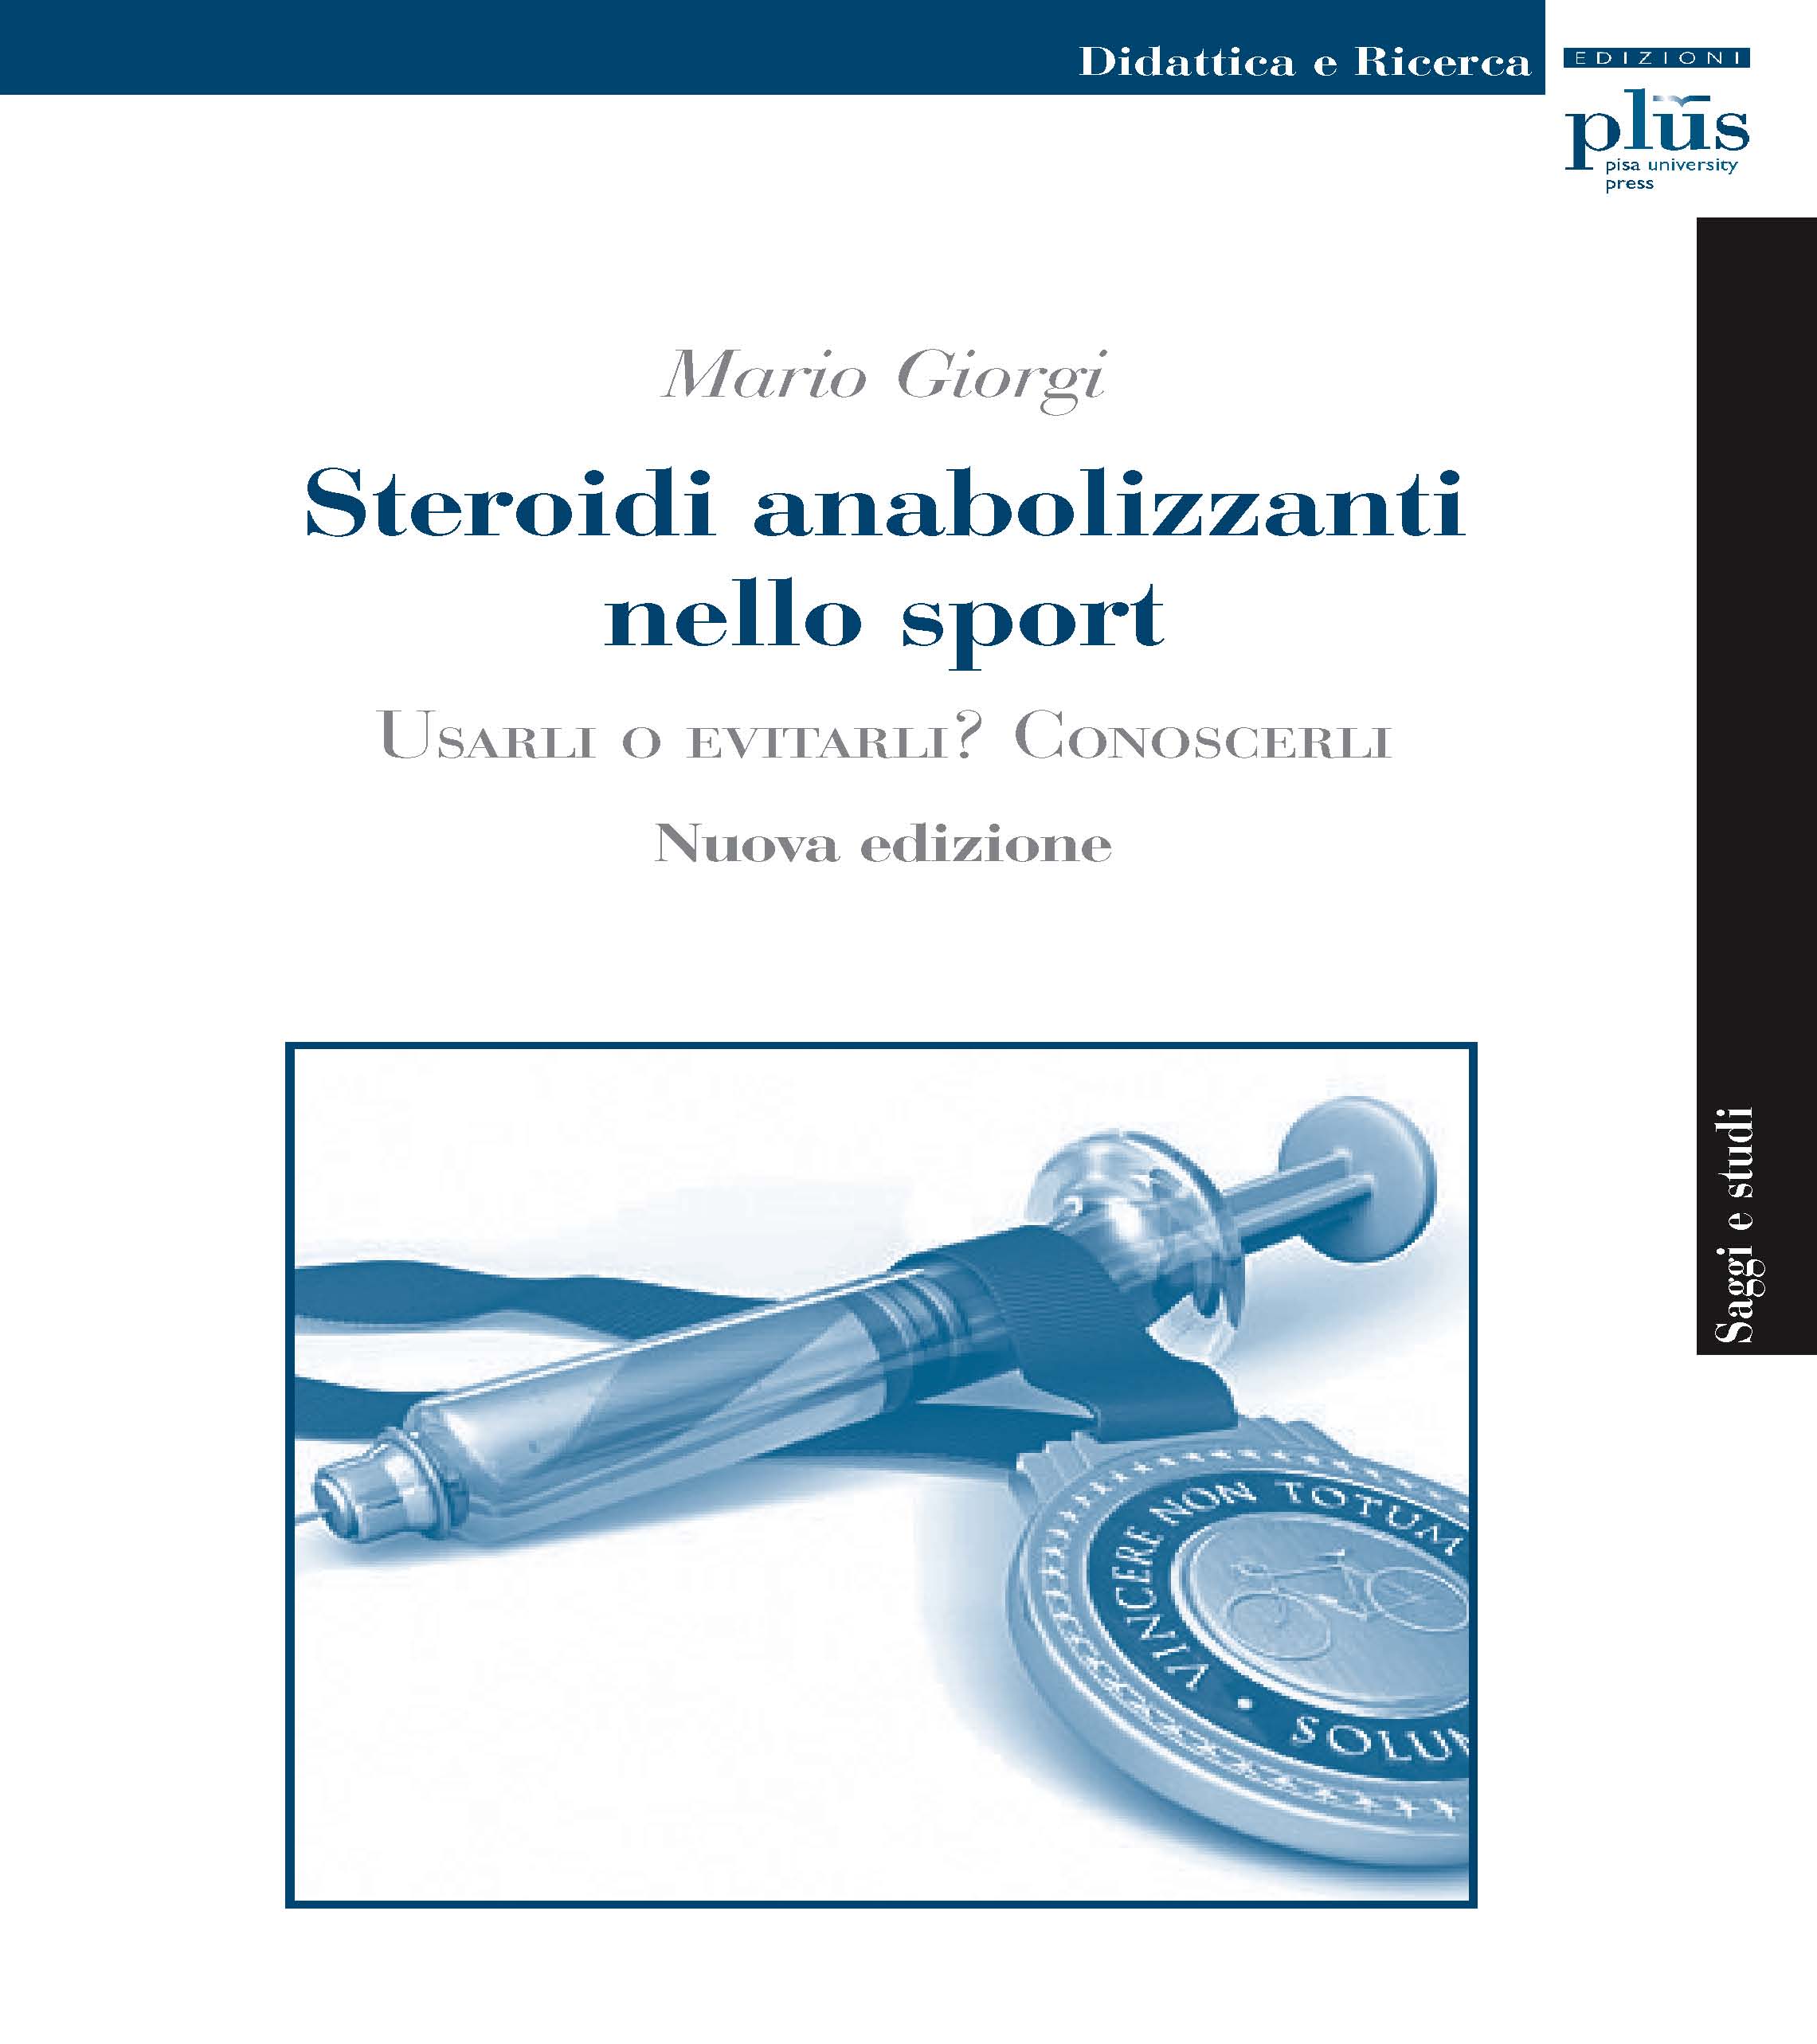 eBook, Steroidi anabolizzanti nello sport : usarli o evitarli? : conoscerli, PLUS-Pisa University Press